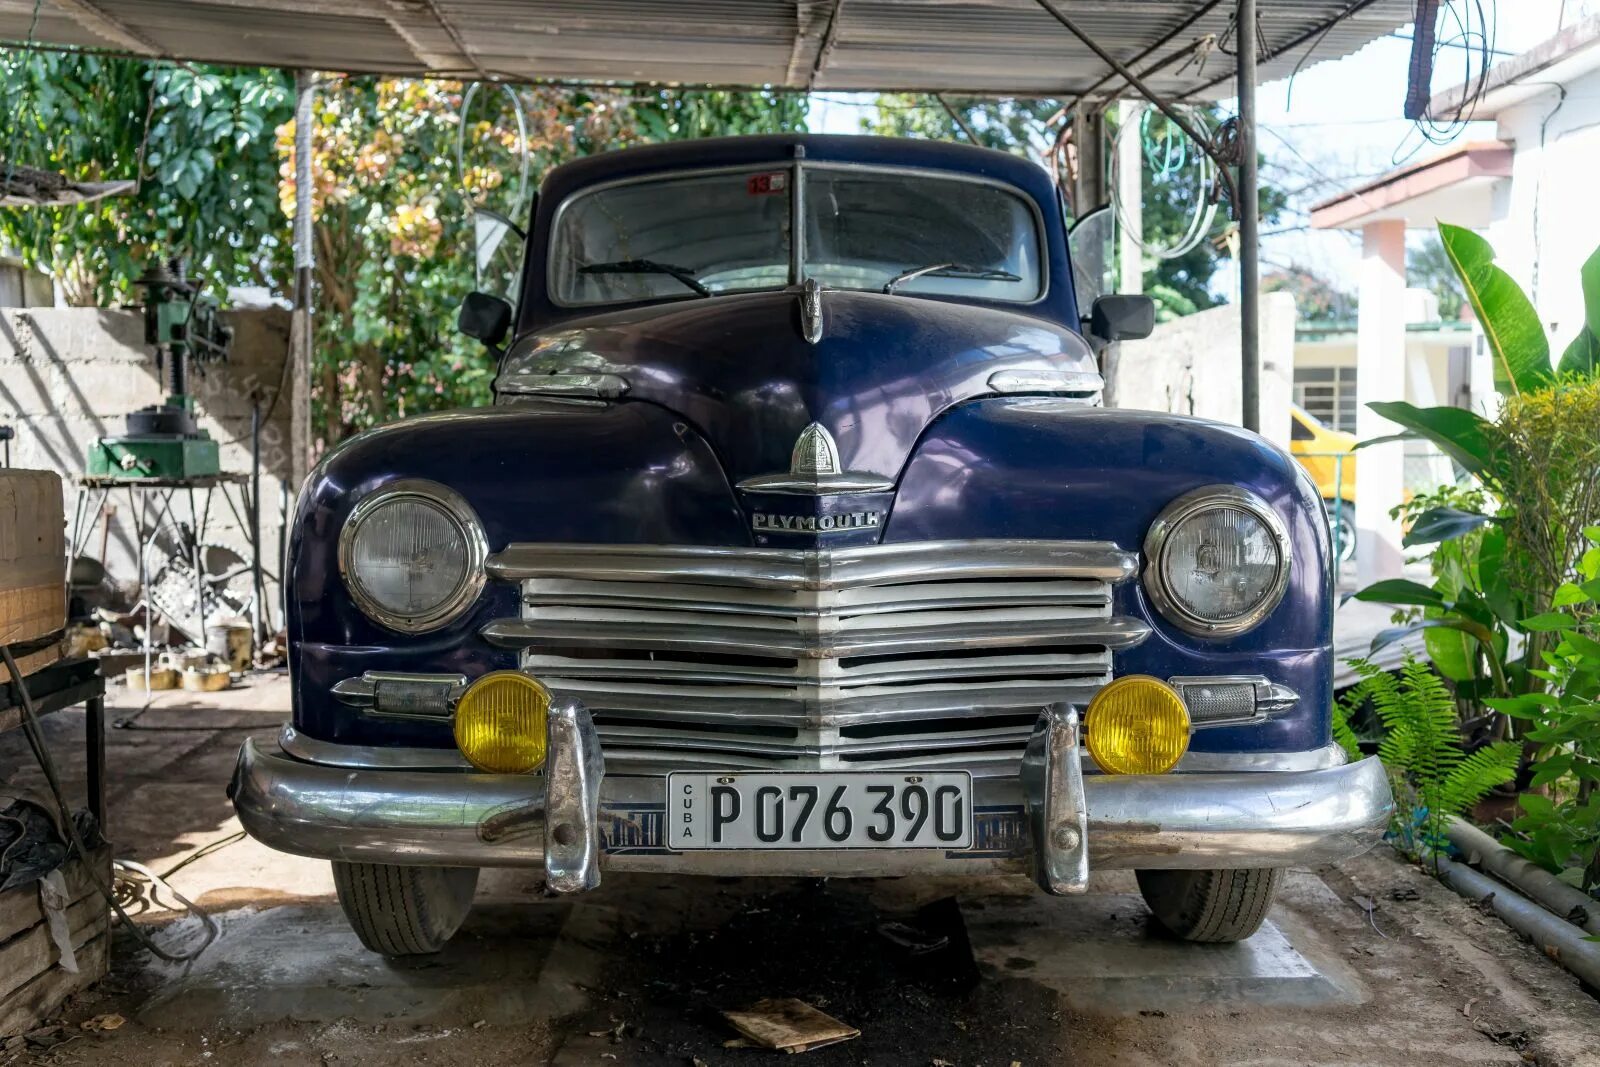 Кубинский номер. Автомобильные номера Куба. Куба номера машин. Кубинские автомобильные номера. Кубинские номера машин.